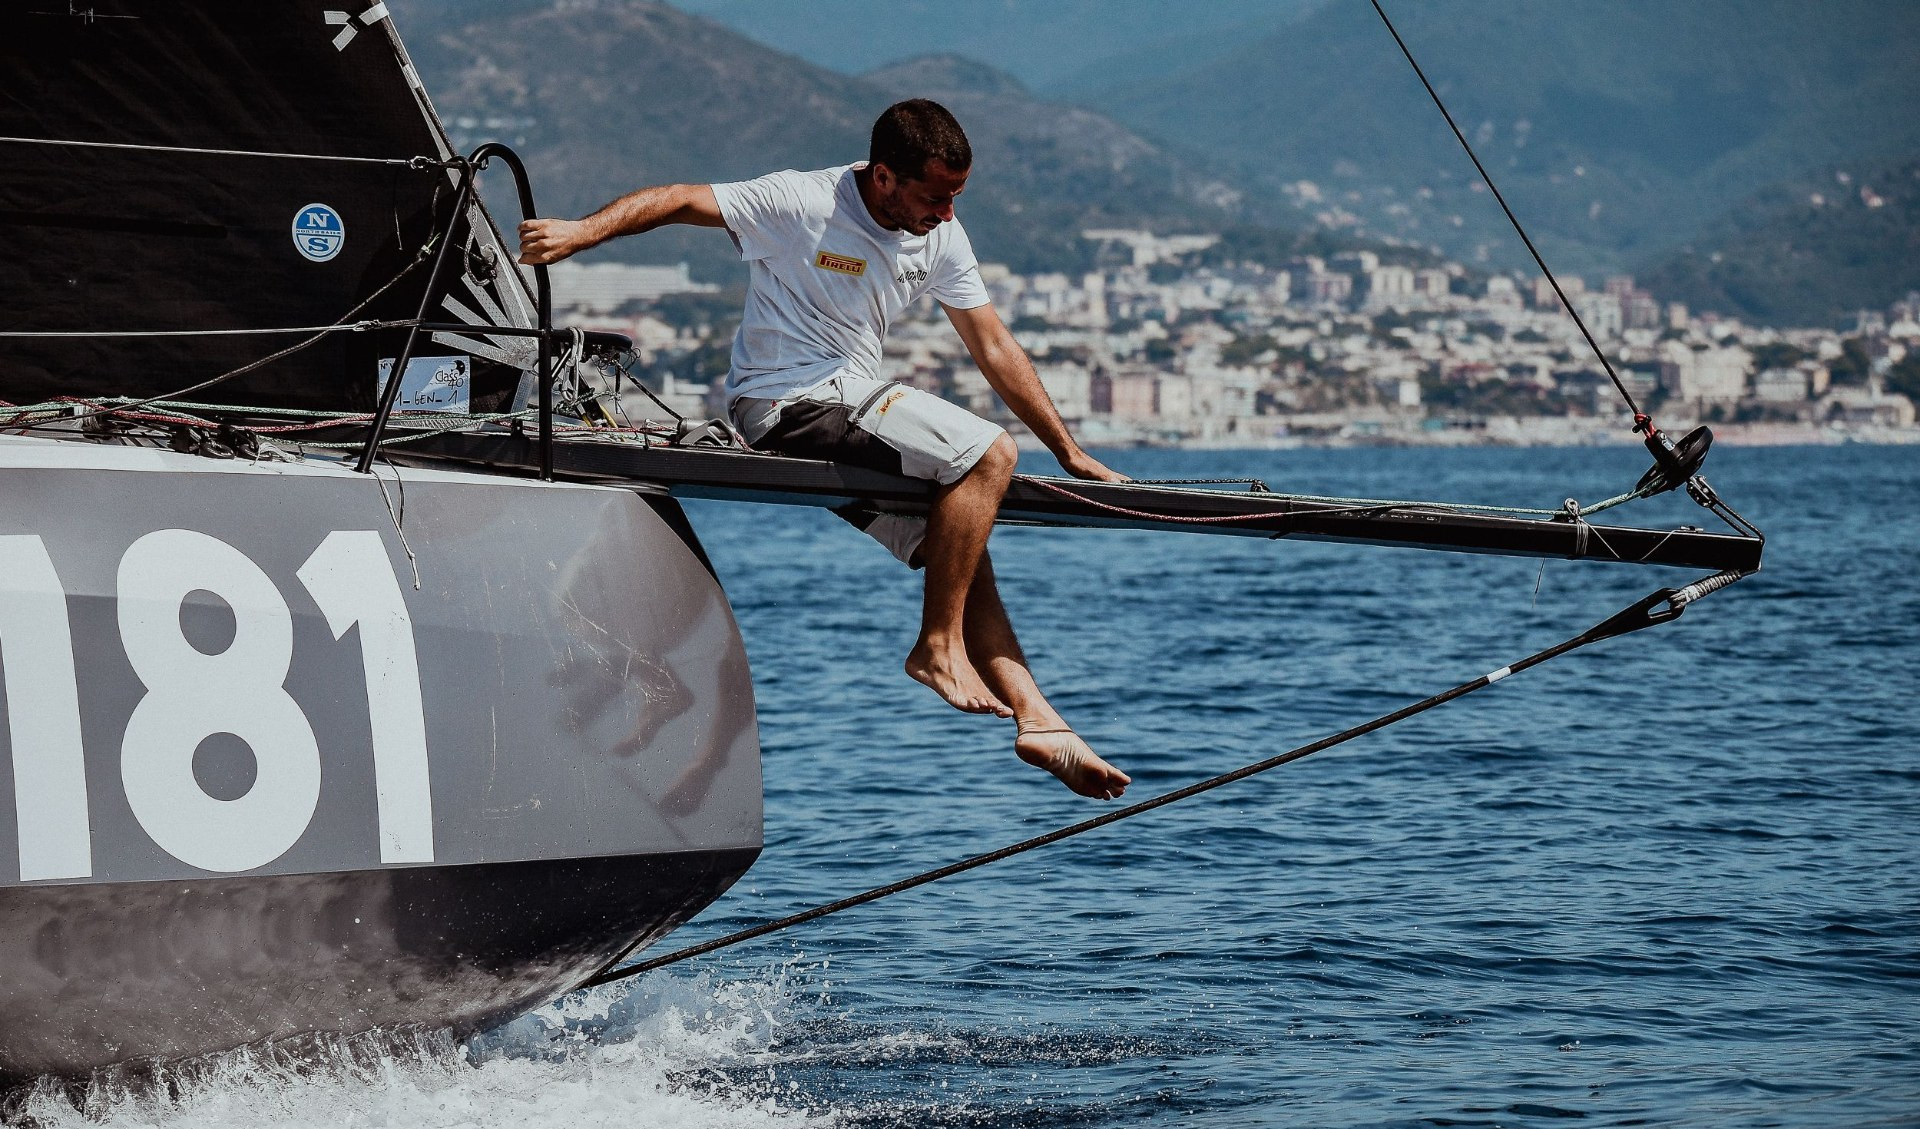 Dallo Yacht Club Italiano alla regata transatlantica in solitaria, presentata l'avventura 